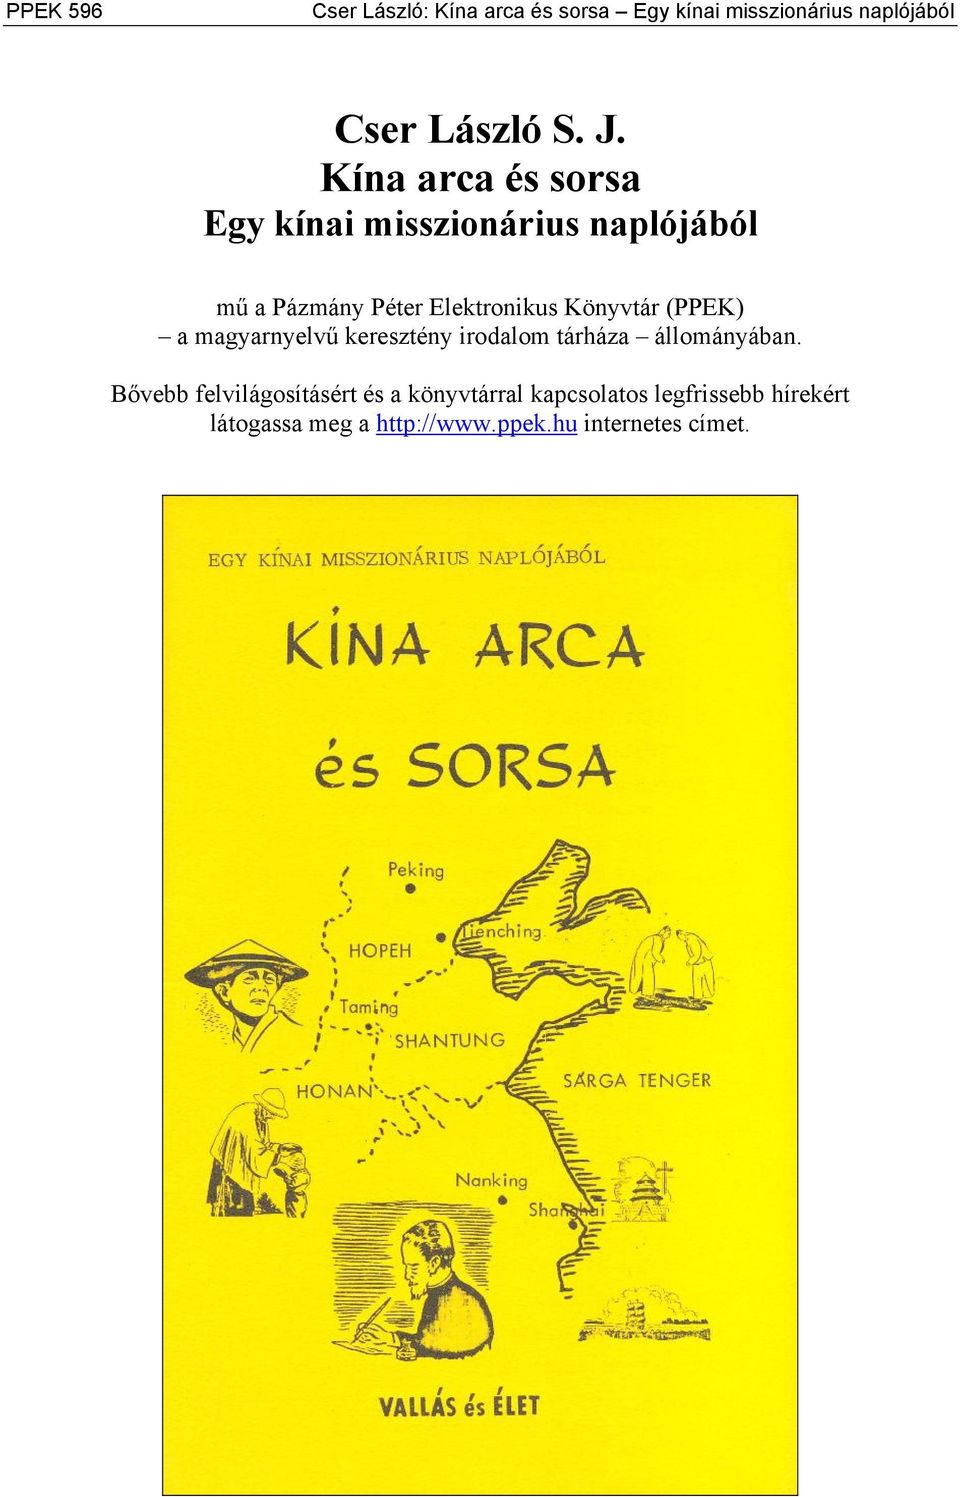 (PPEK) a magyarnyelvű keresztény irodalom tárháza állományában.